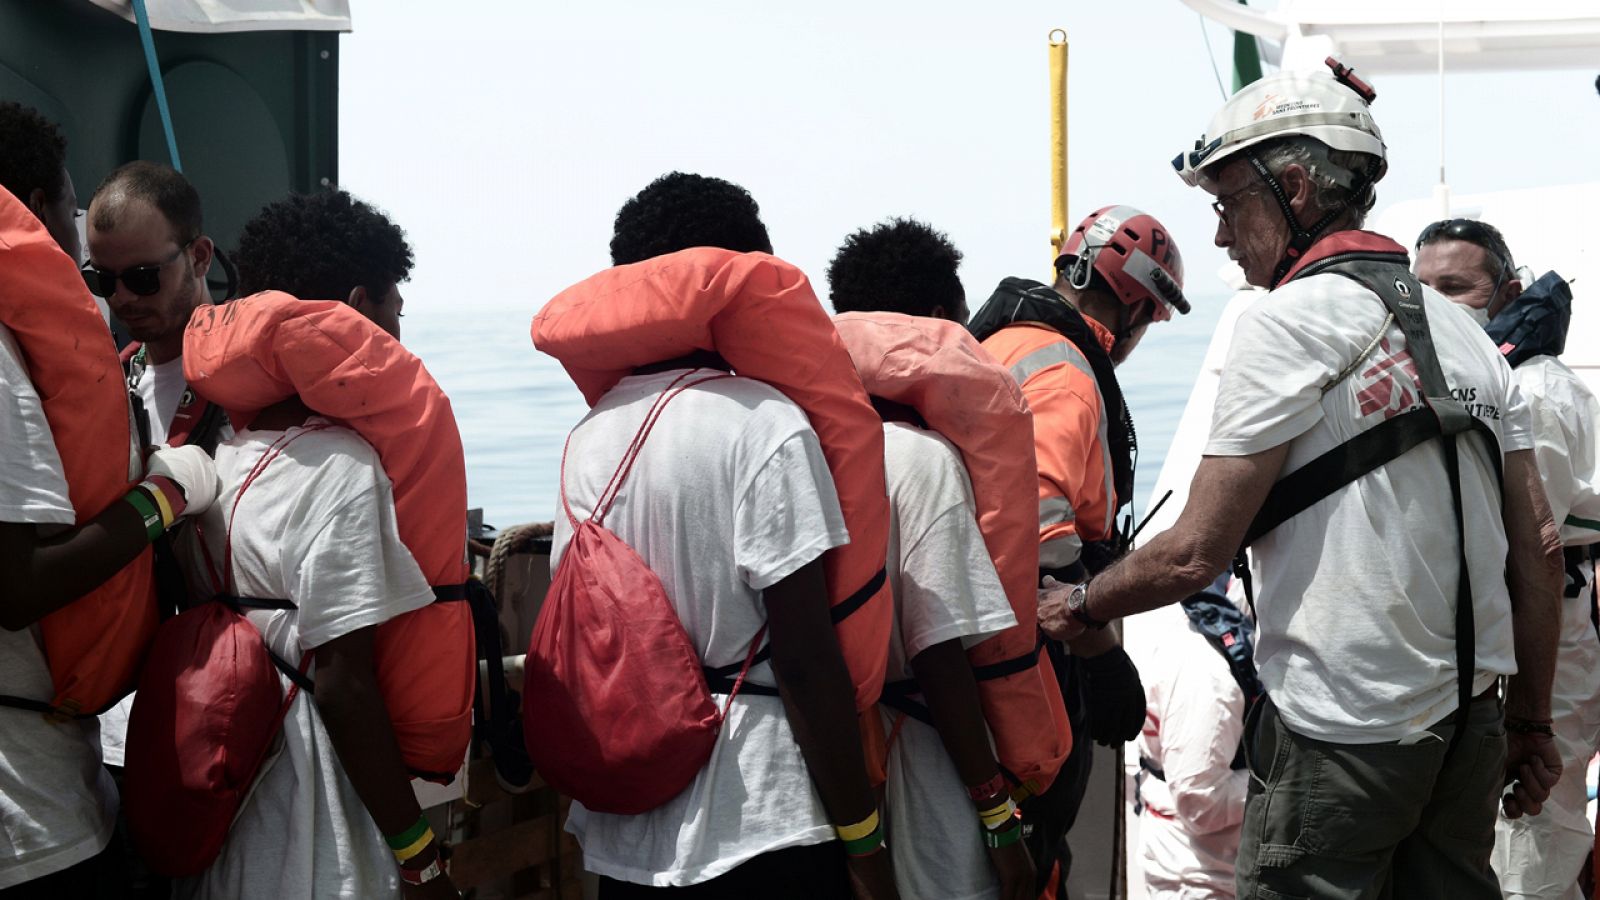 Voluntarios del Aquarius ayudan a trasladar a los migrantes a embarcaciones italianas